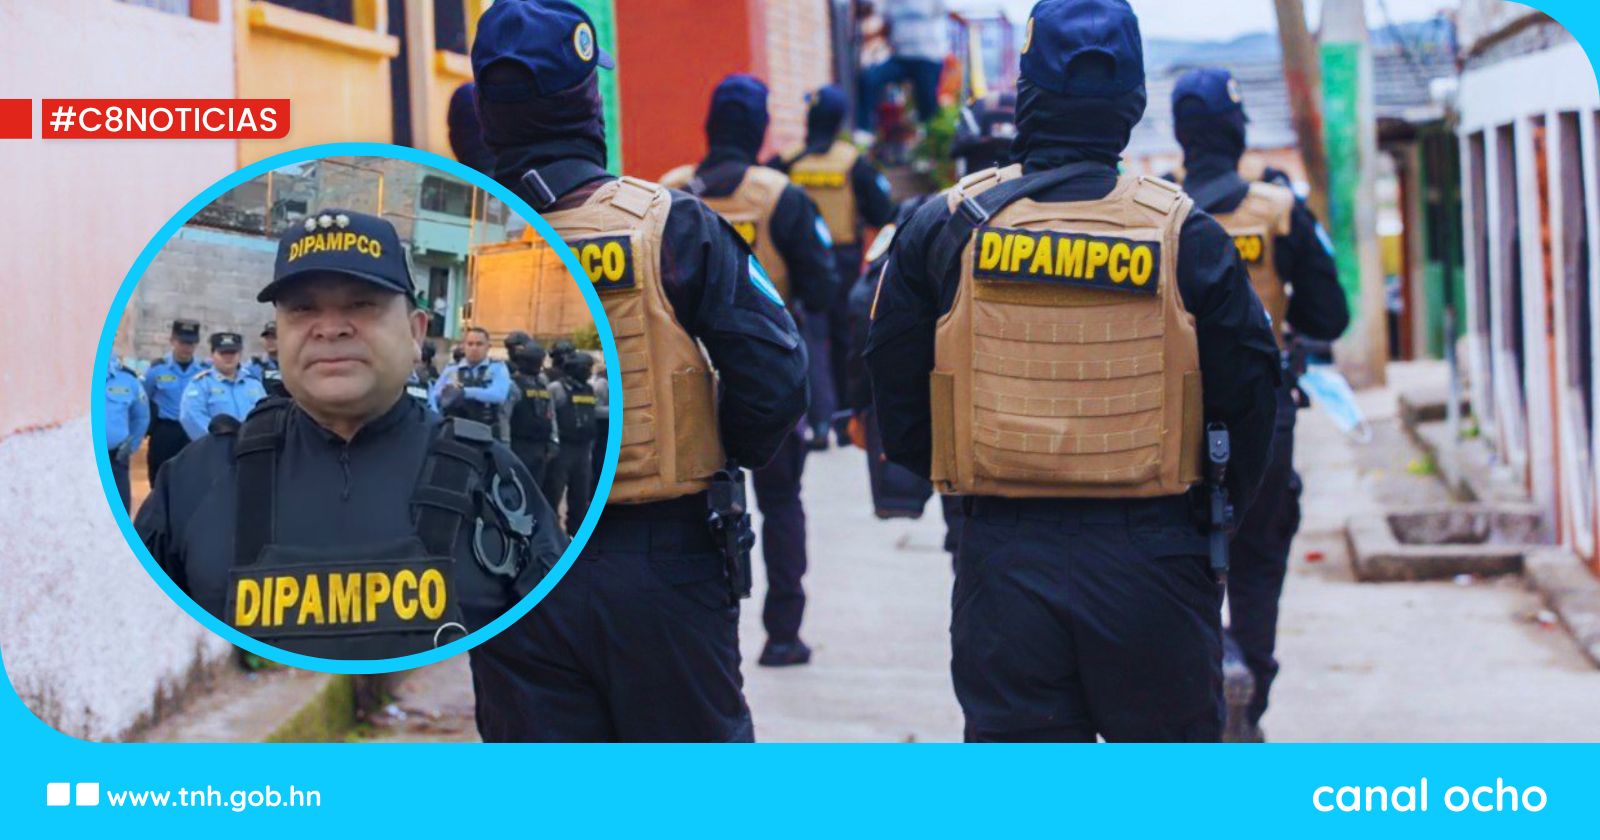 Grupos criminales han dejado de percibir más de L98 millones, confirma Mario Molina